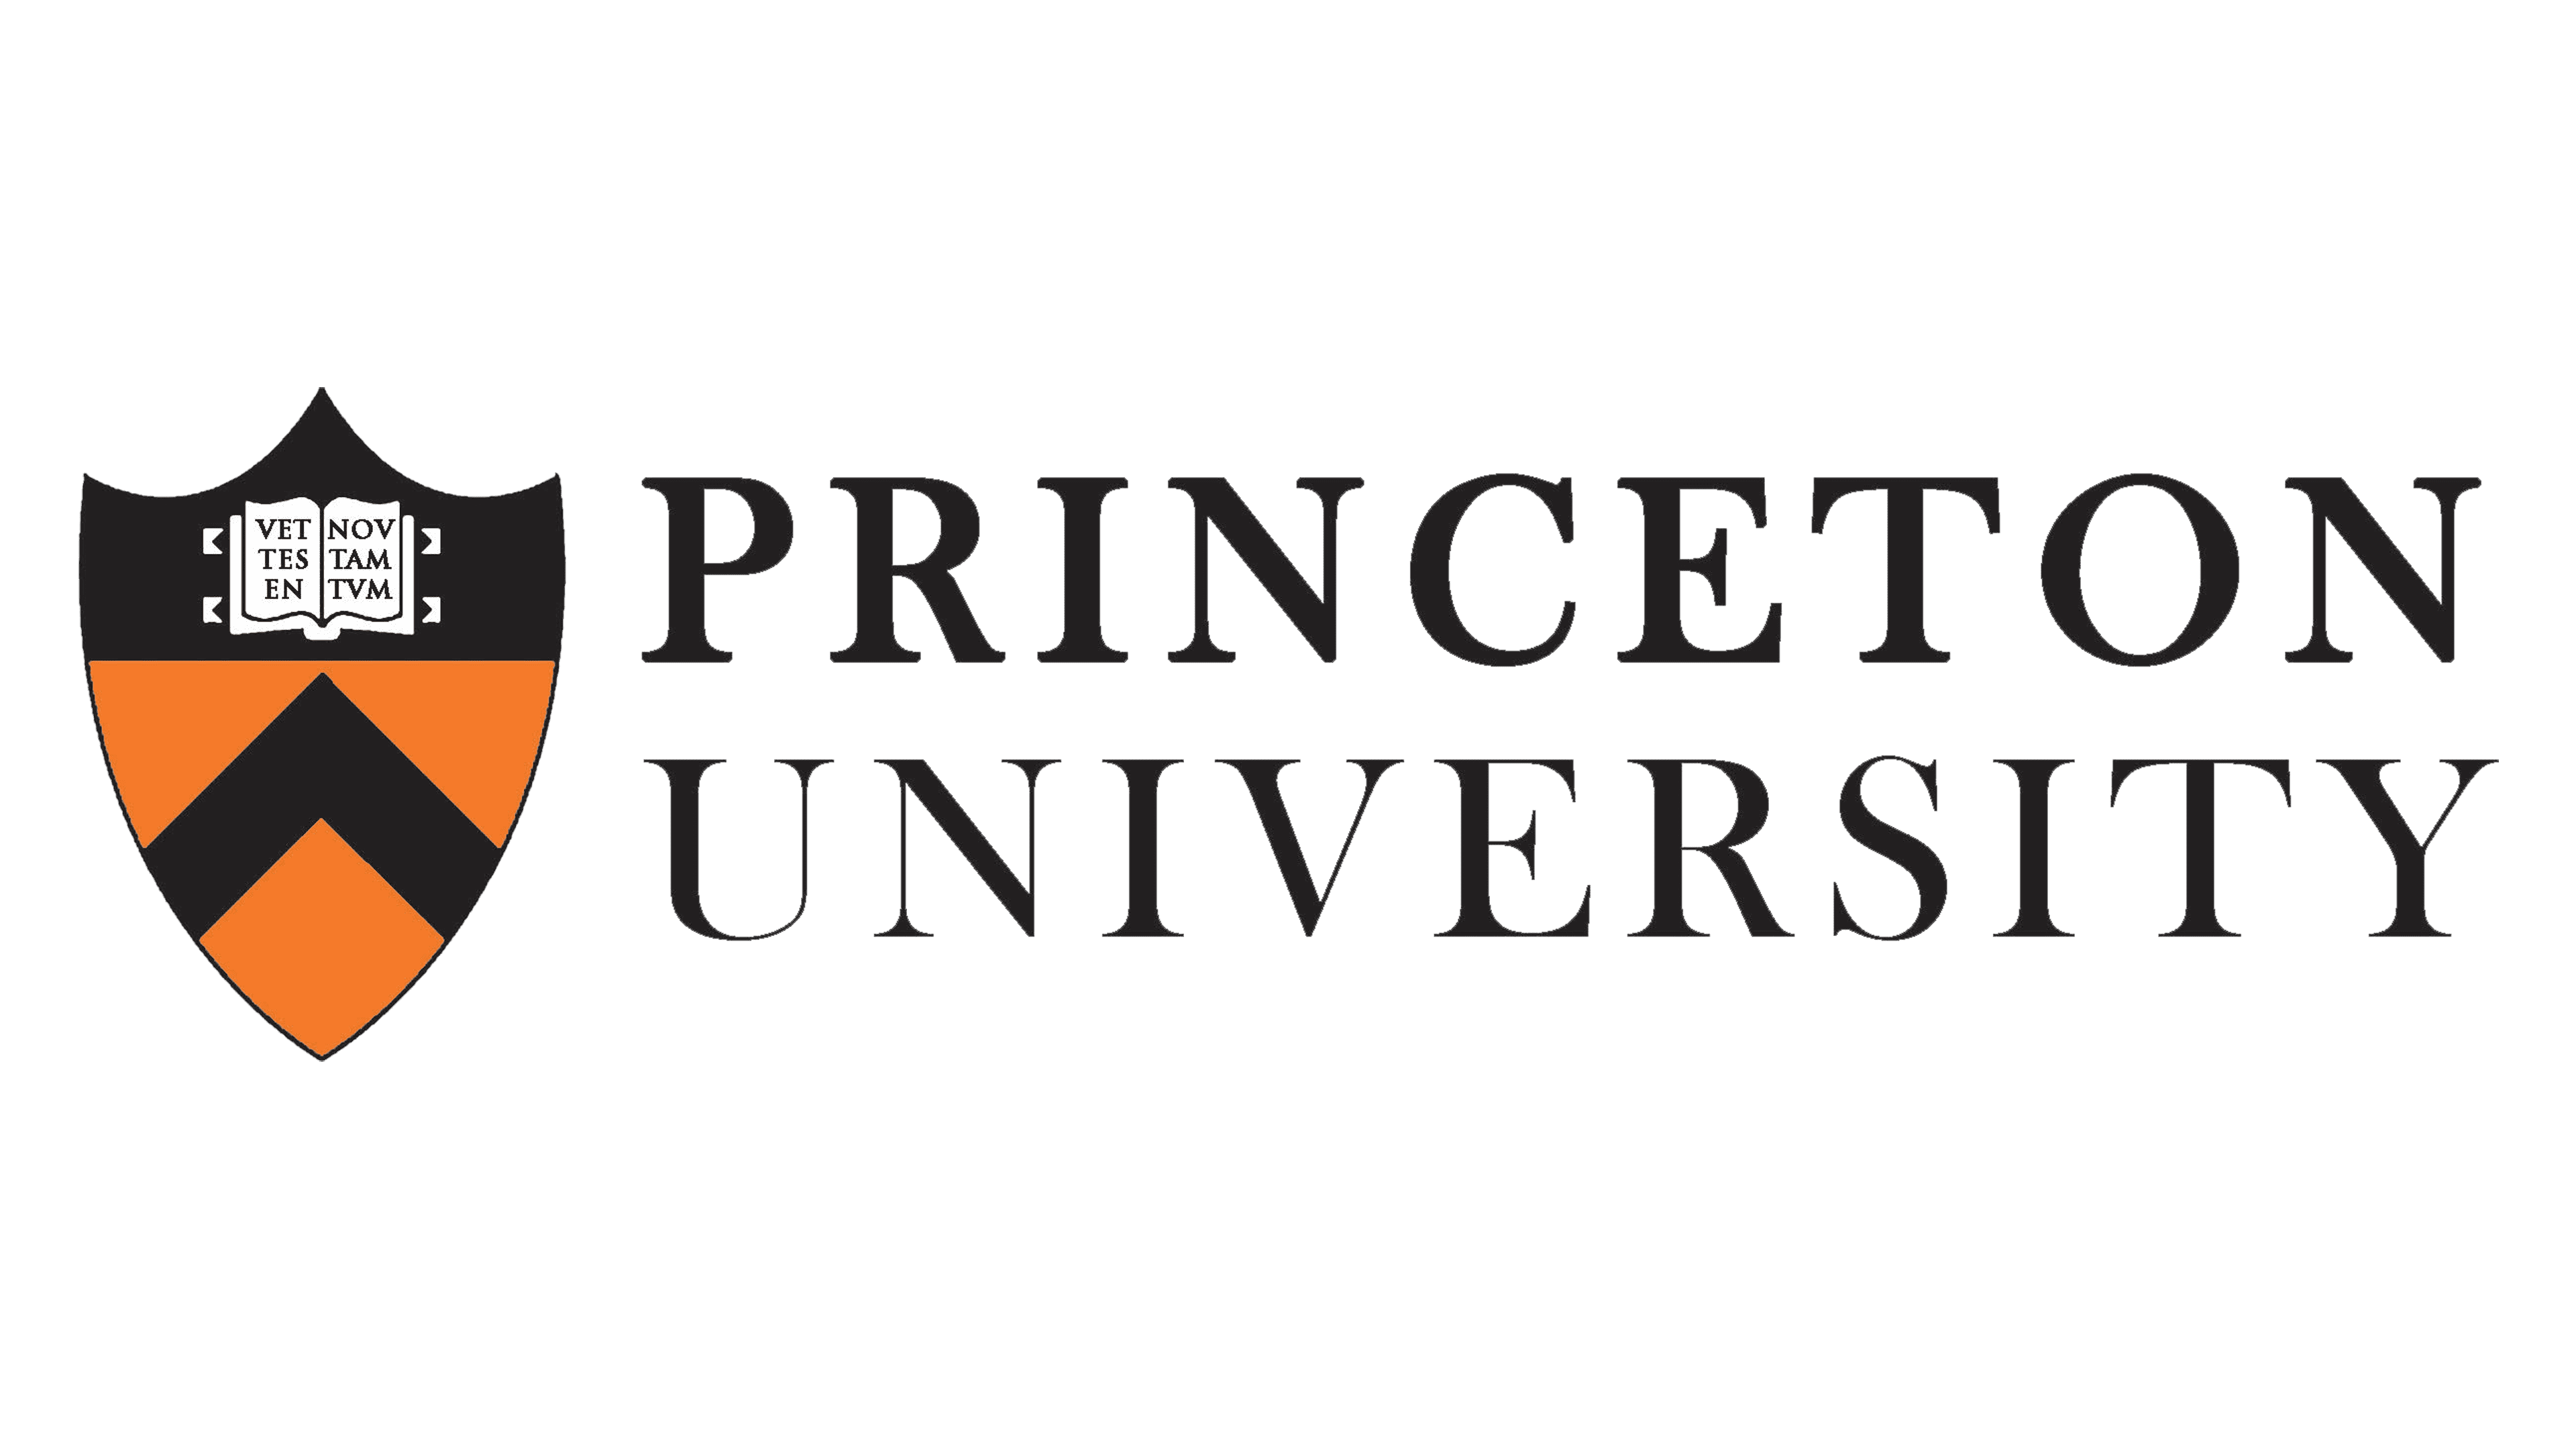 Princeton Üniversitesi Logosu ve sembolü, anlamı, geçmişi, PNG, marka